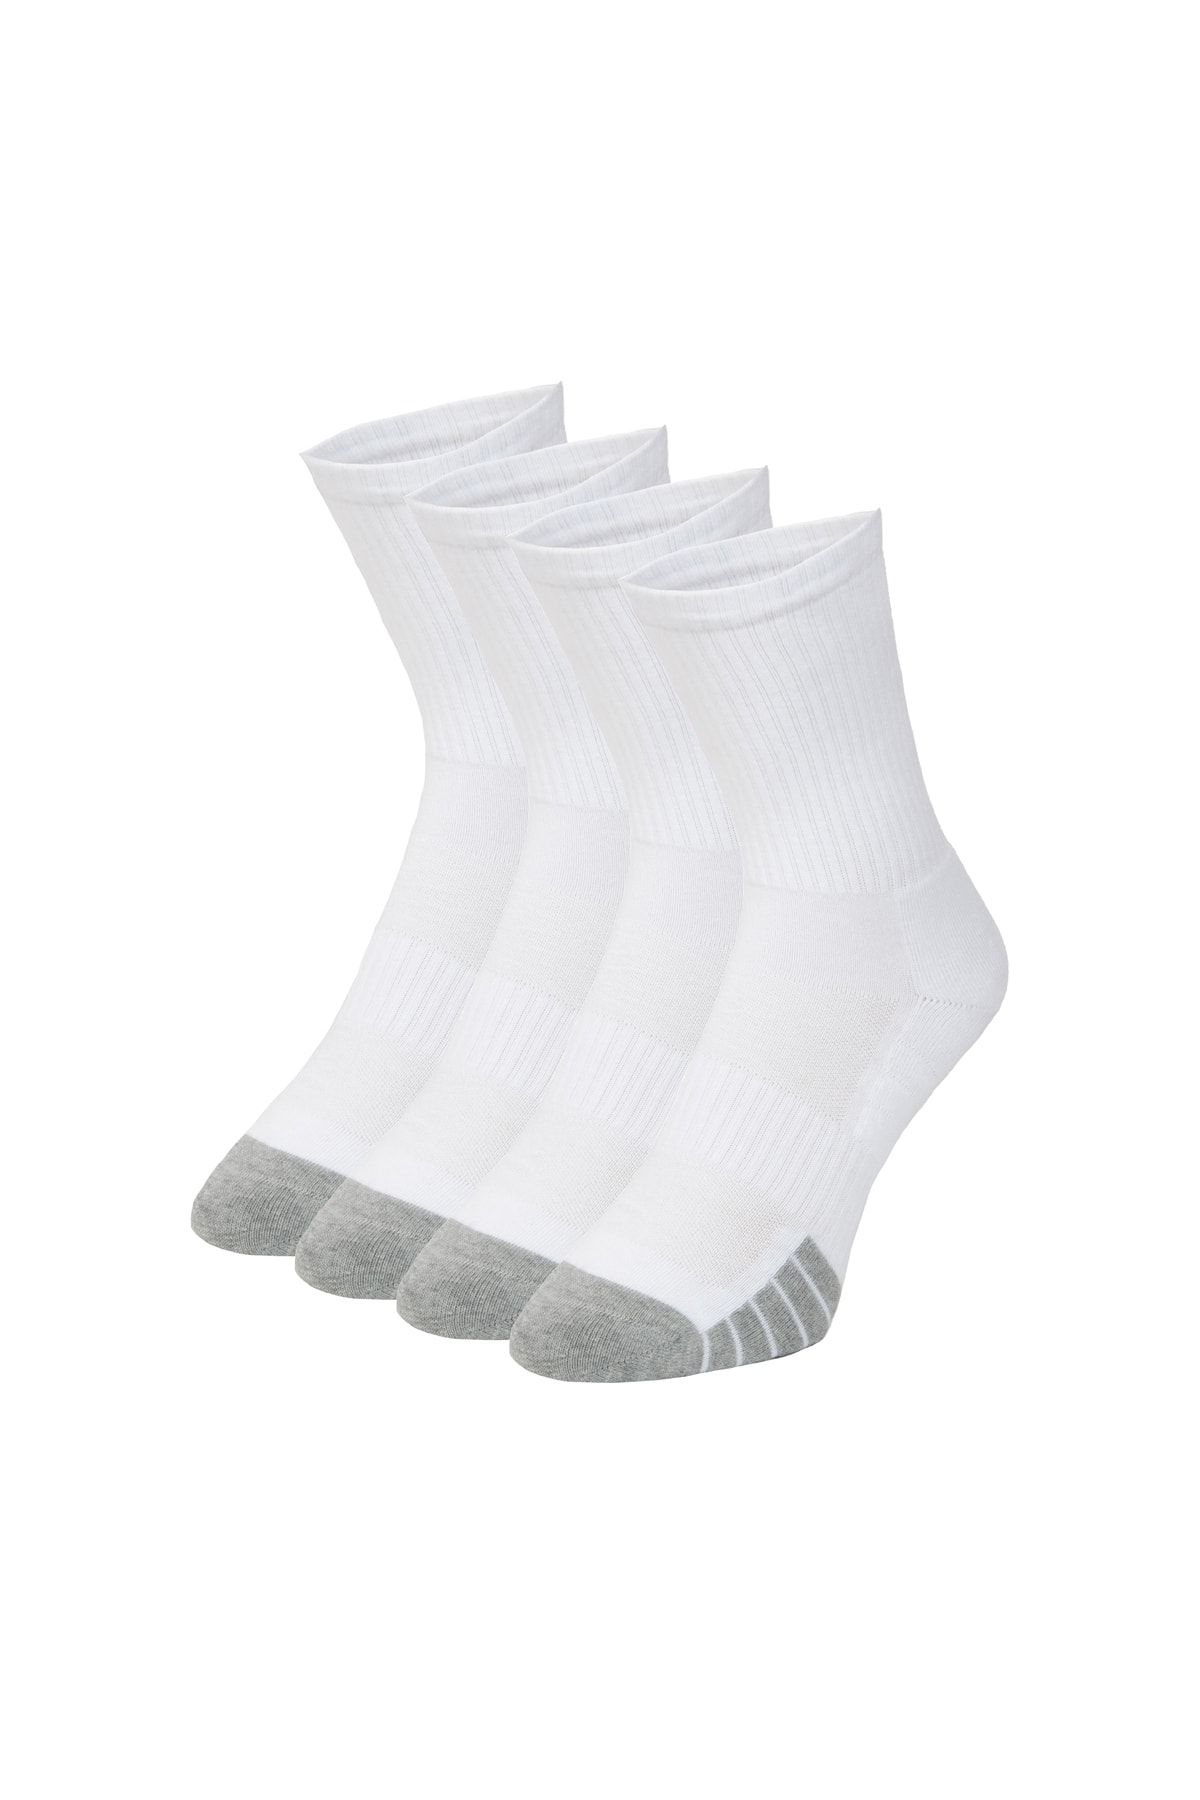 DuraSocks Erkek-kadın Spor Çorap, Antibakteriyel, Esnek, Dikişsiz Premium Çorap (4 Çift)